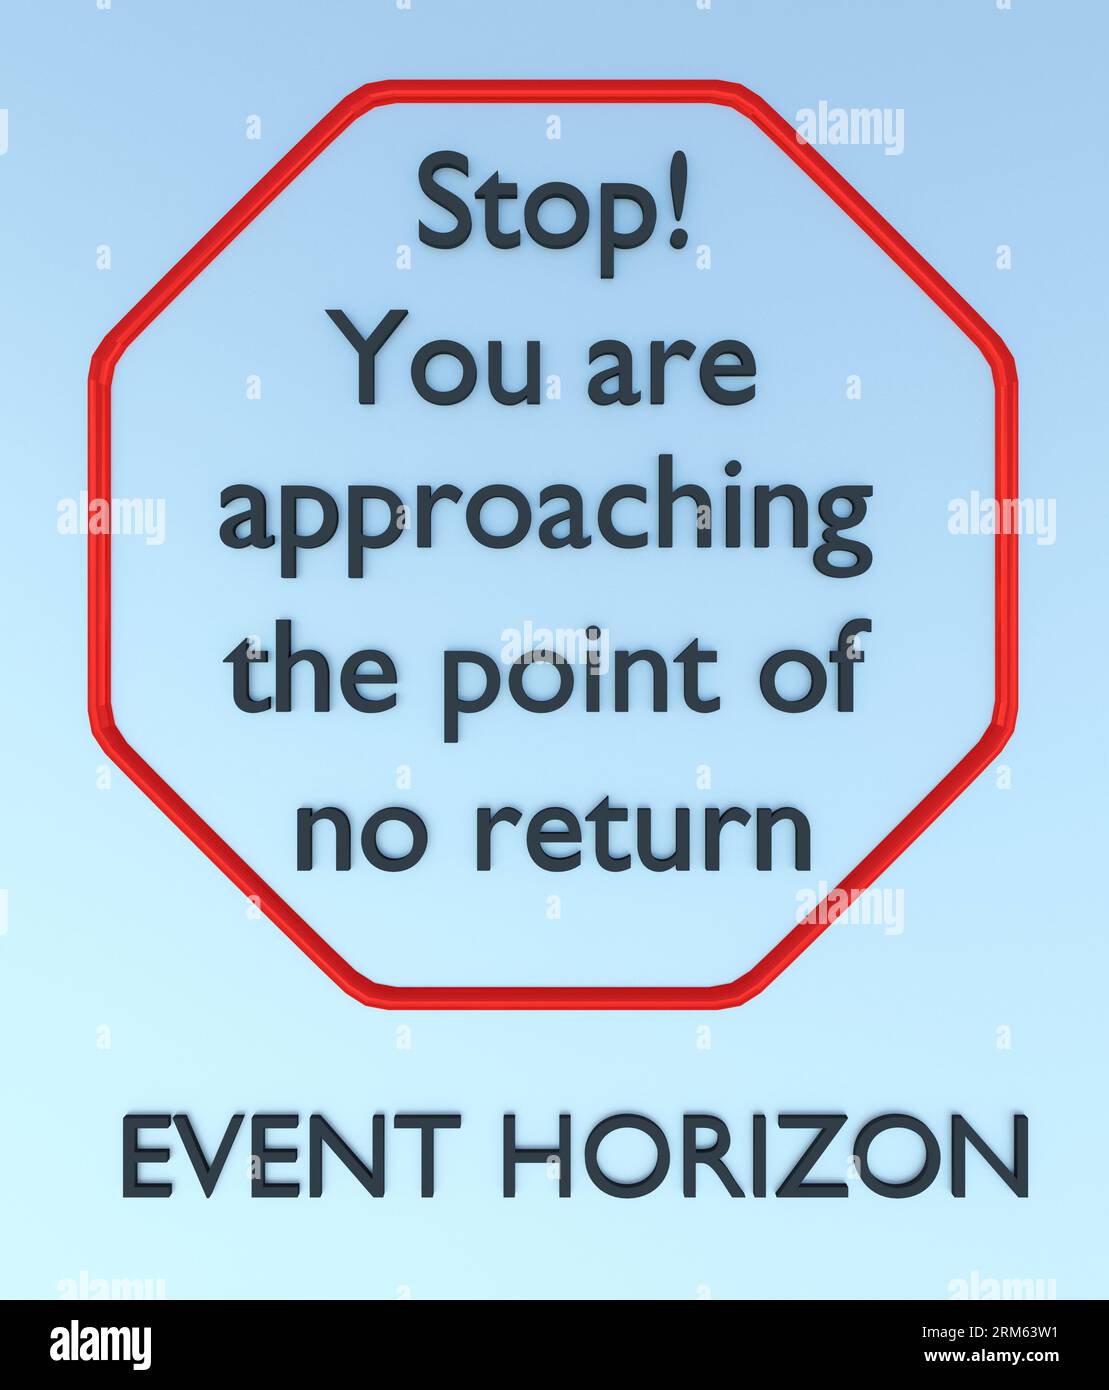 Illustrazione 3D dello script "You are approaching the point of no return" (si sta avvicinando al punto di non ritorno) in un riquadro rosso del cartello stradale, intitolato EVENT HORIZON (ORIZZONTE EVENTO). Foto Stock